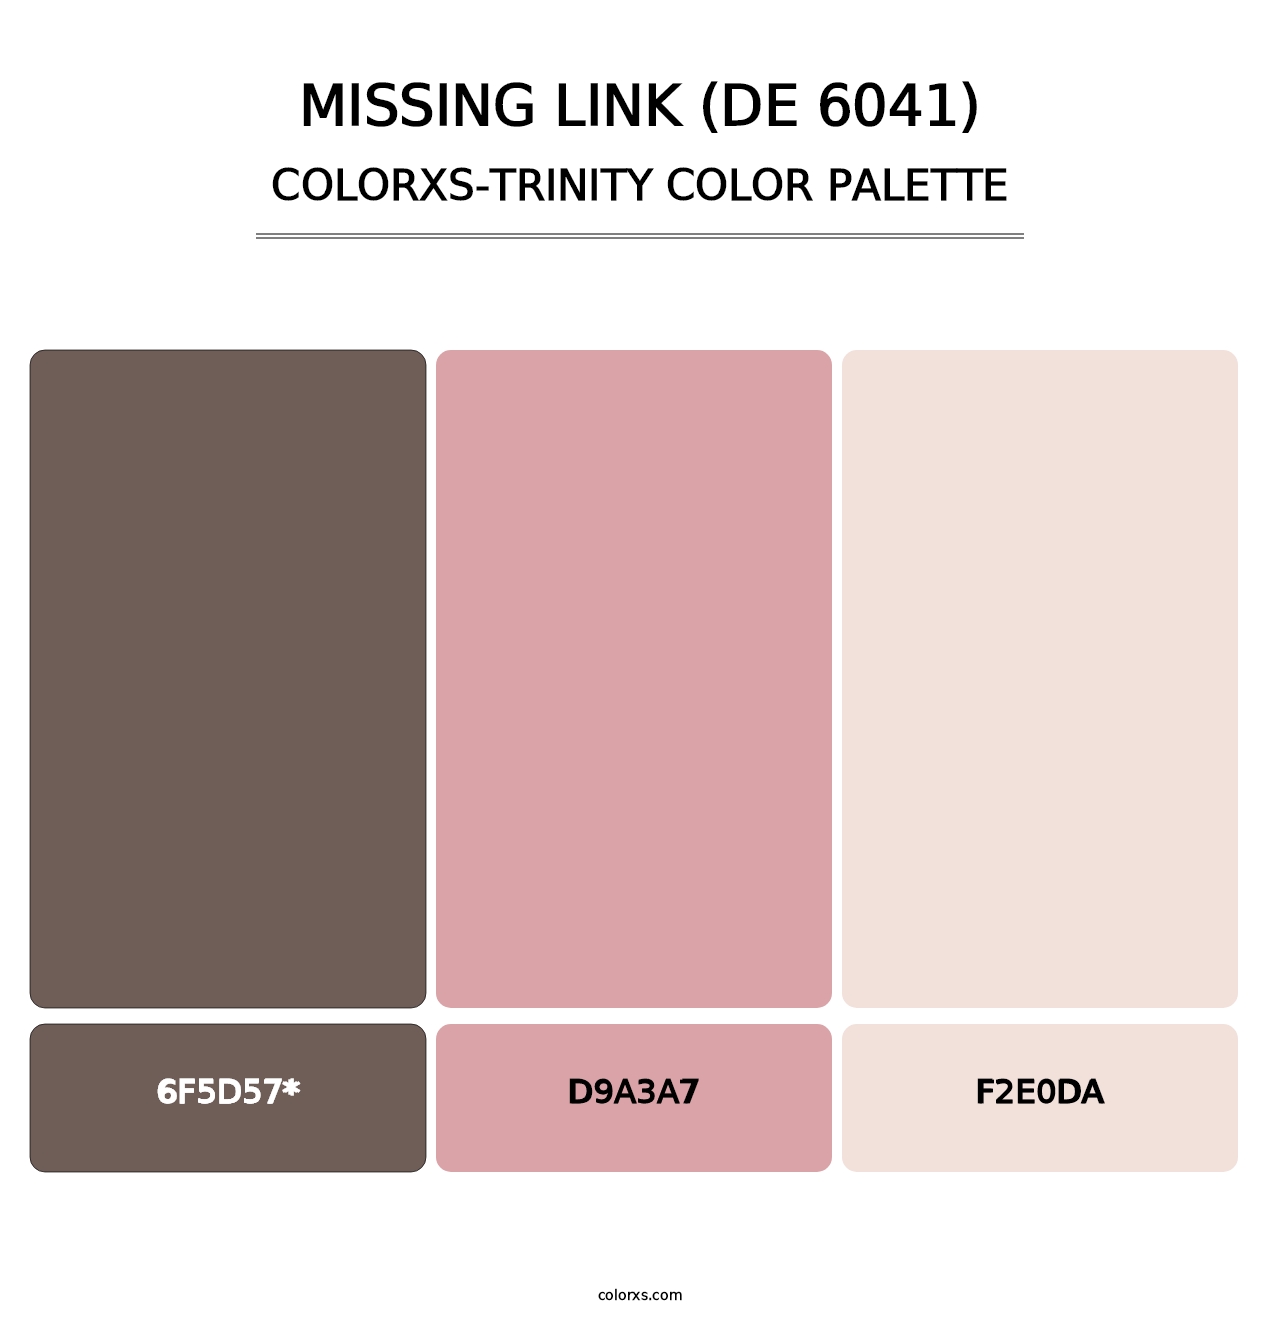 Missing Link (DE 6041) - Colorxs Trinity Palette